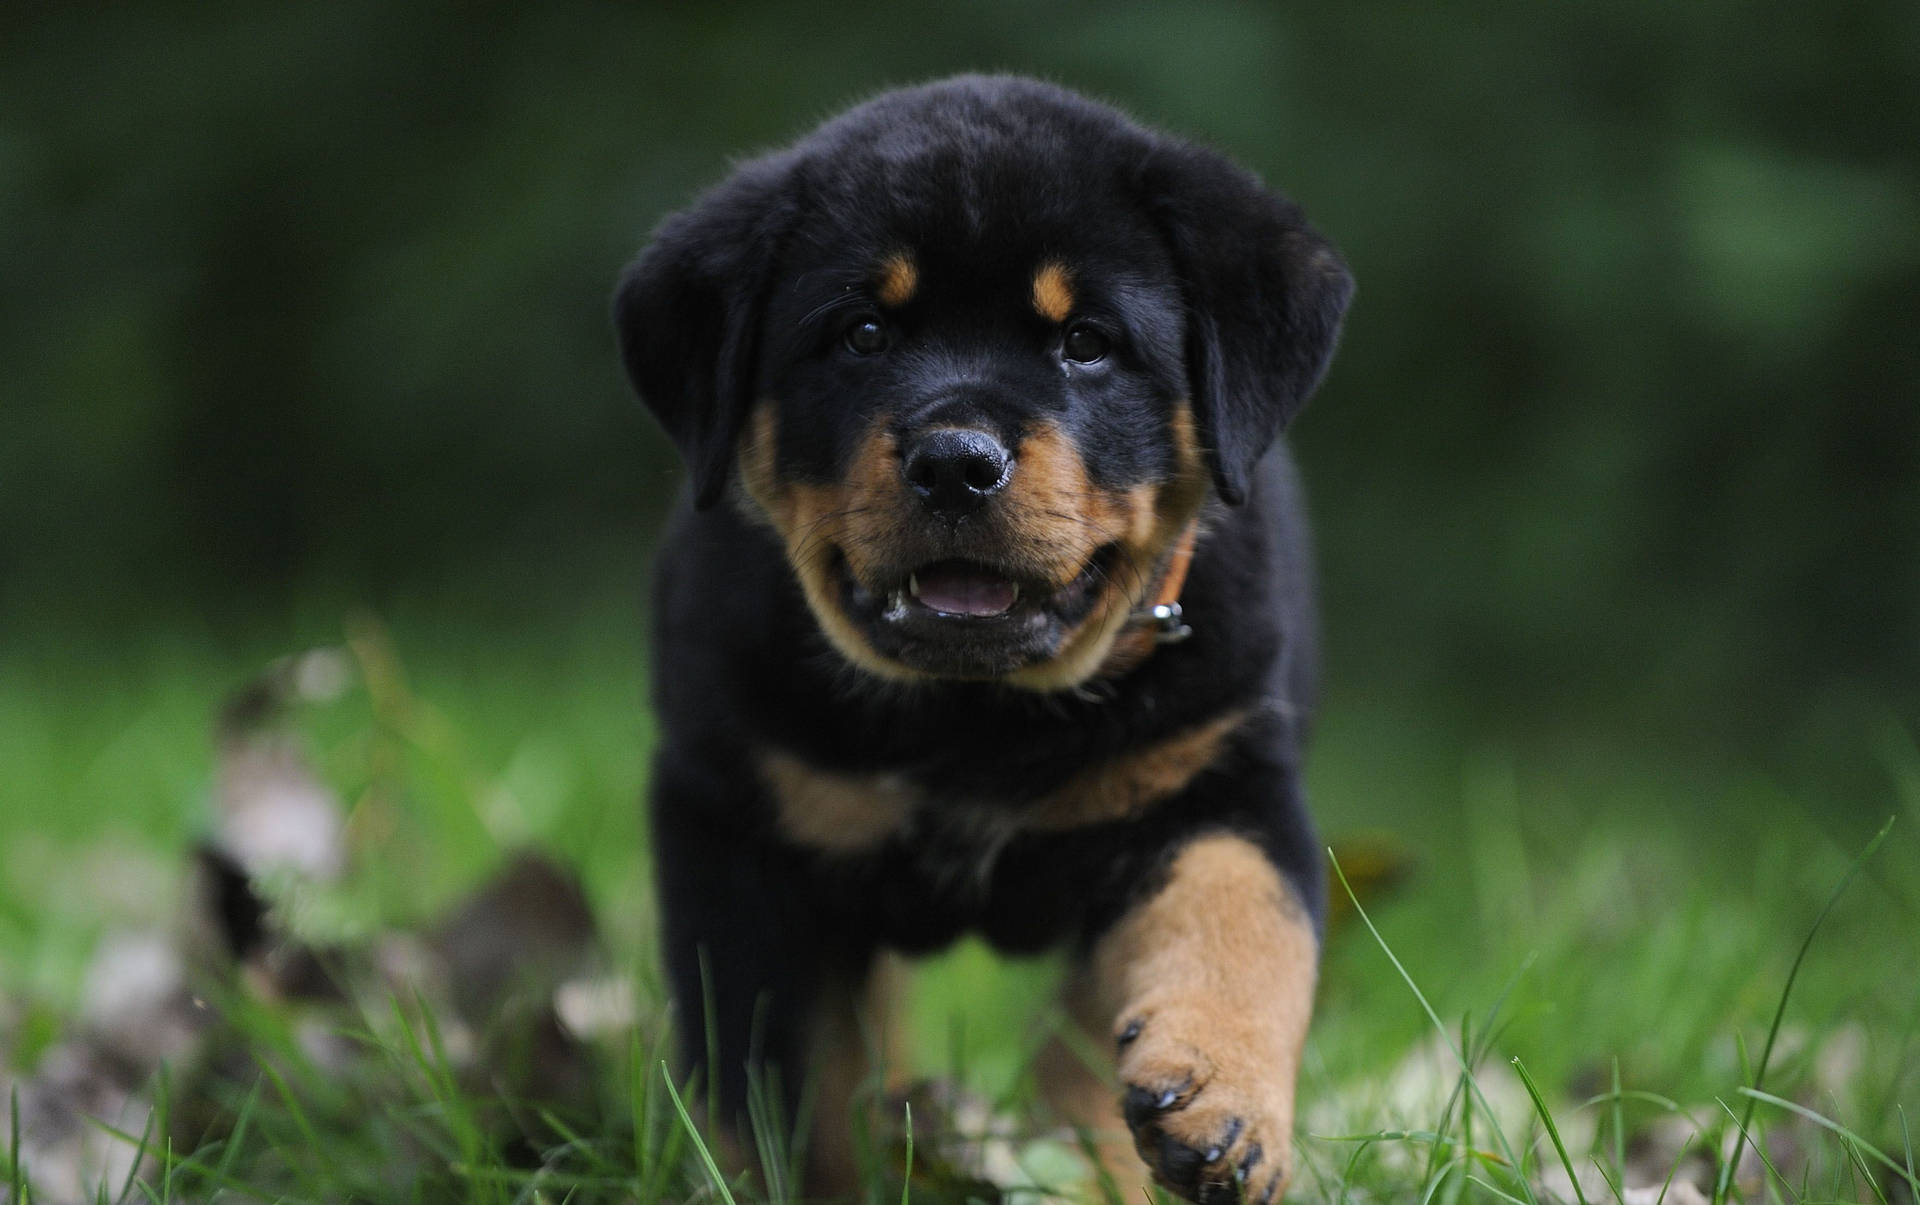 Cute dog wallpaper of Rottweiler puppy walking on grass